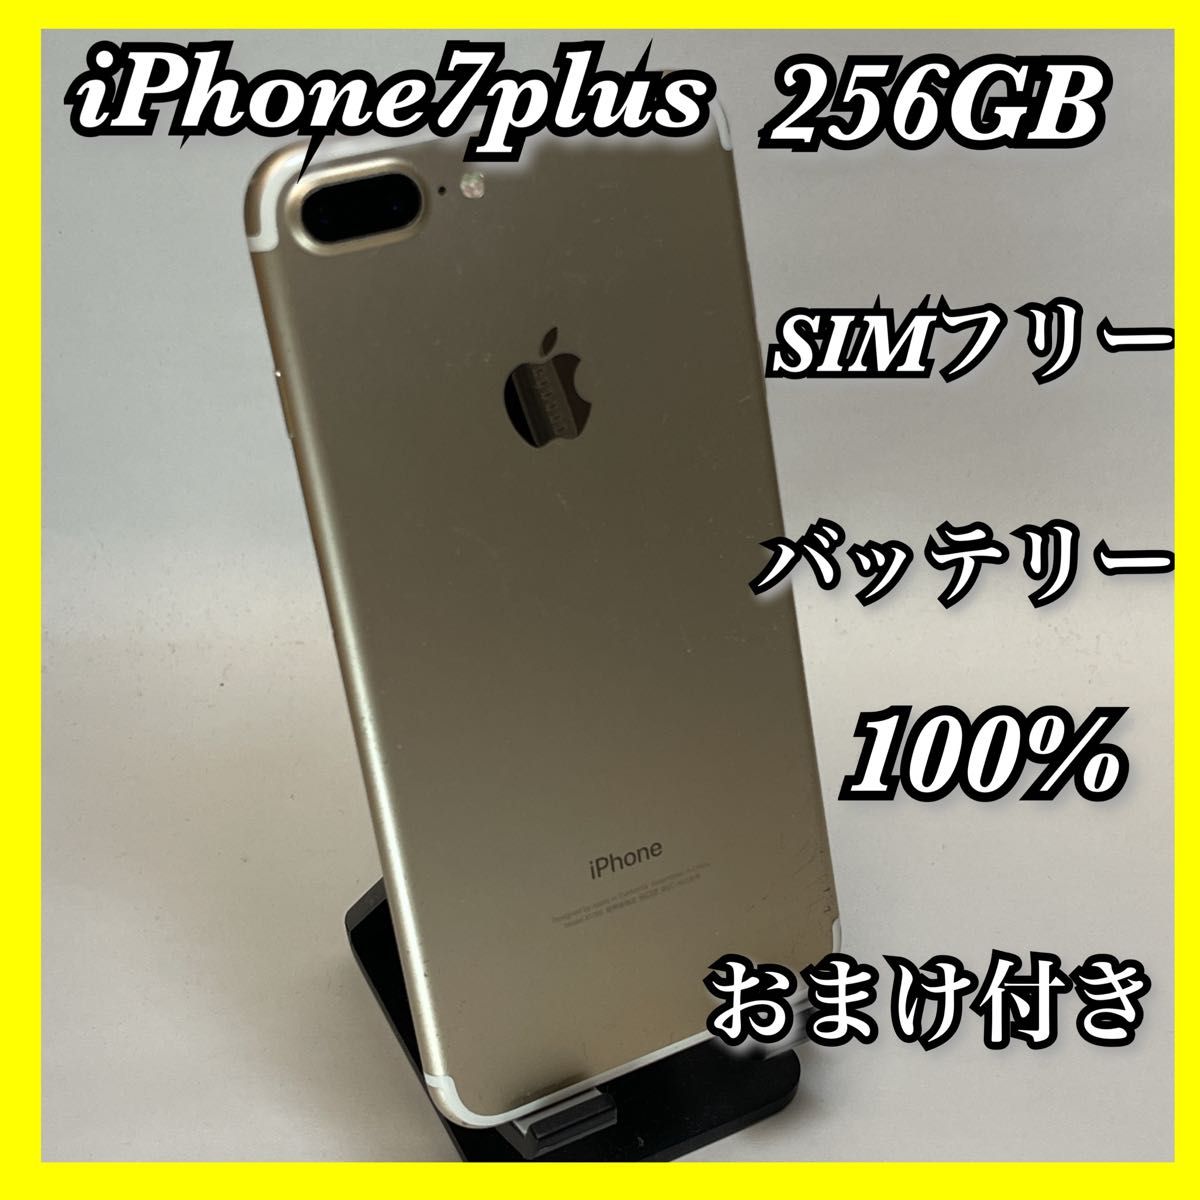 プレゼント サプライズ SIMフリー iPhone7Plus 256GB ゴールド 新品 